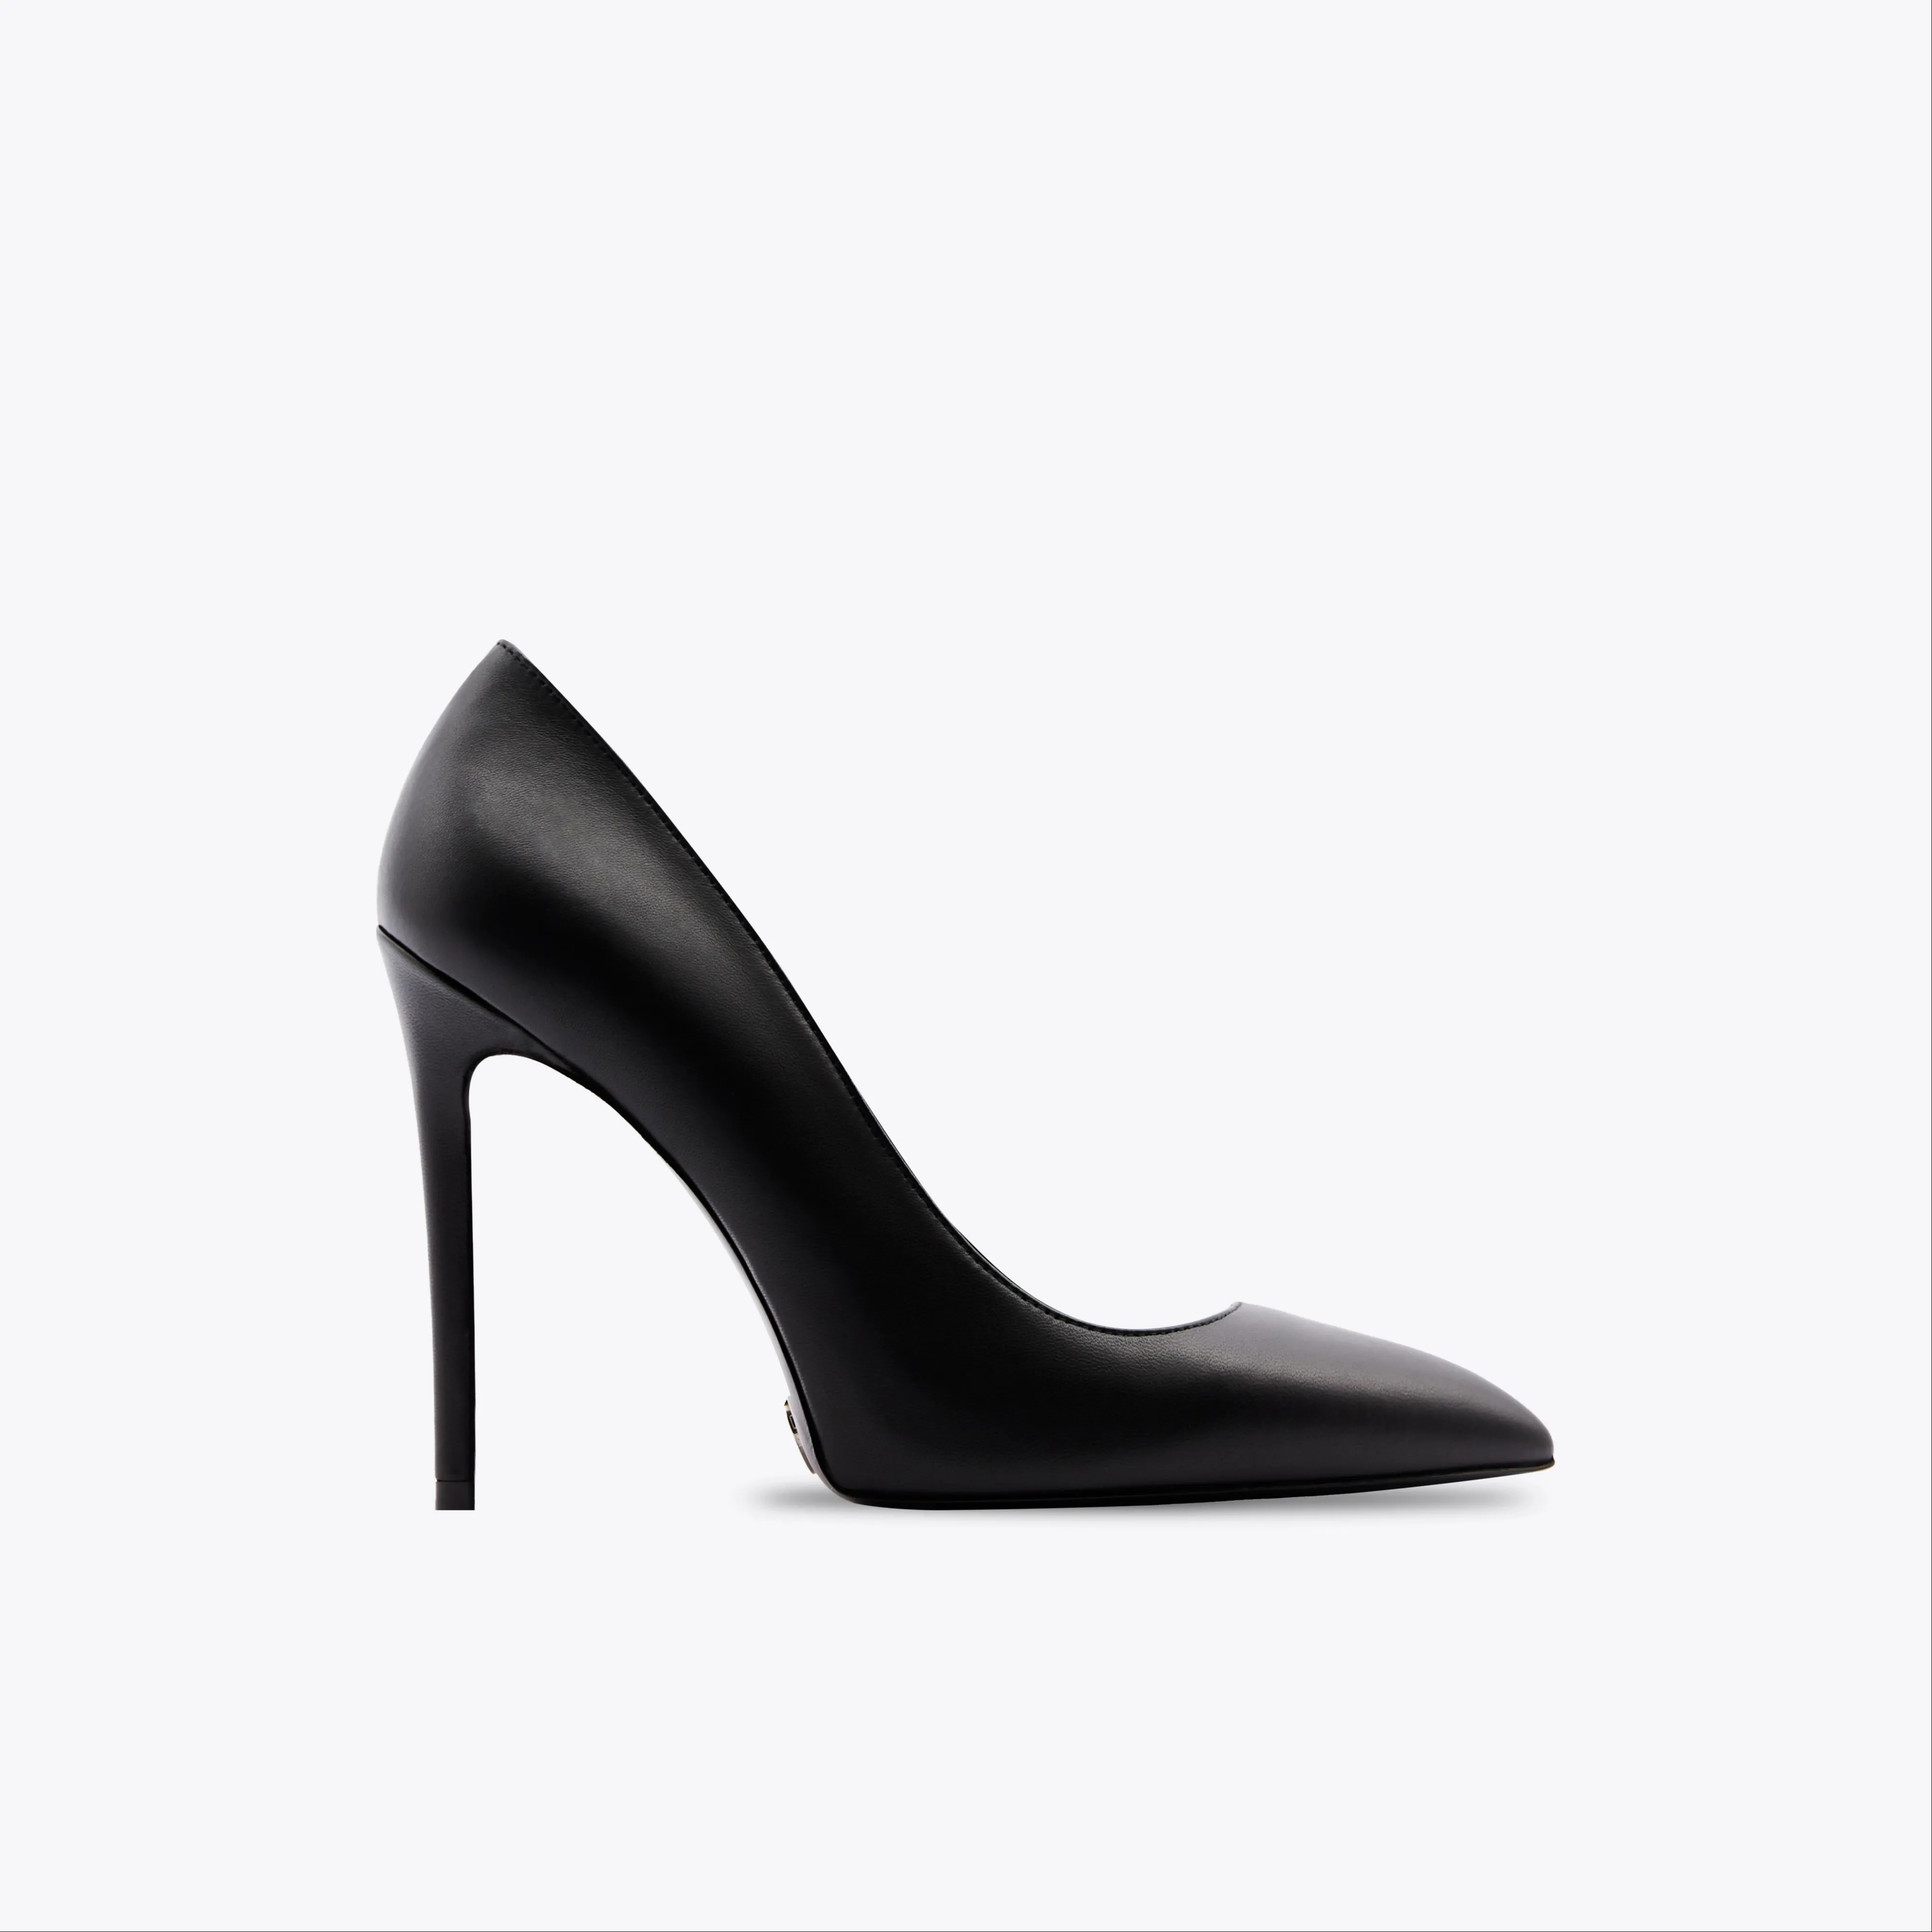 Chaussures à talons hauts noirs de la plus haute qualité pour dames Fabriquées en Italie Première dame en cuir de veau véritable